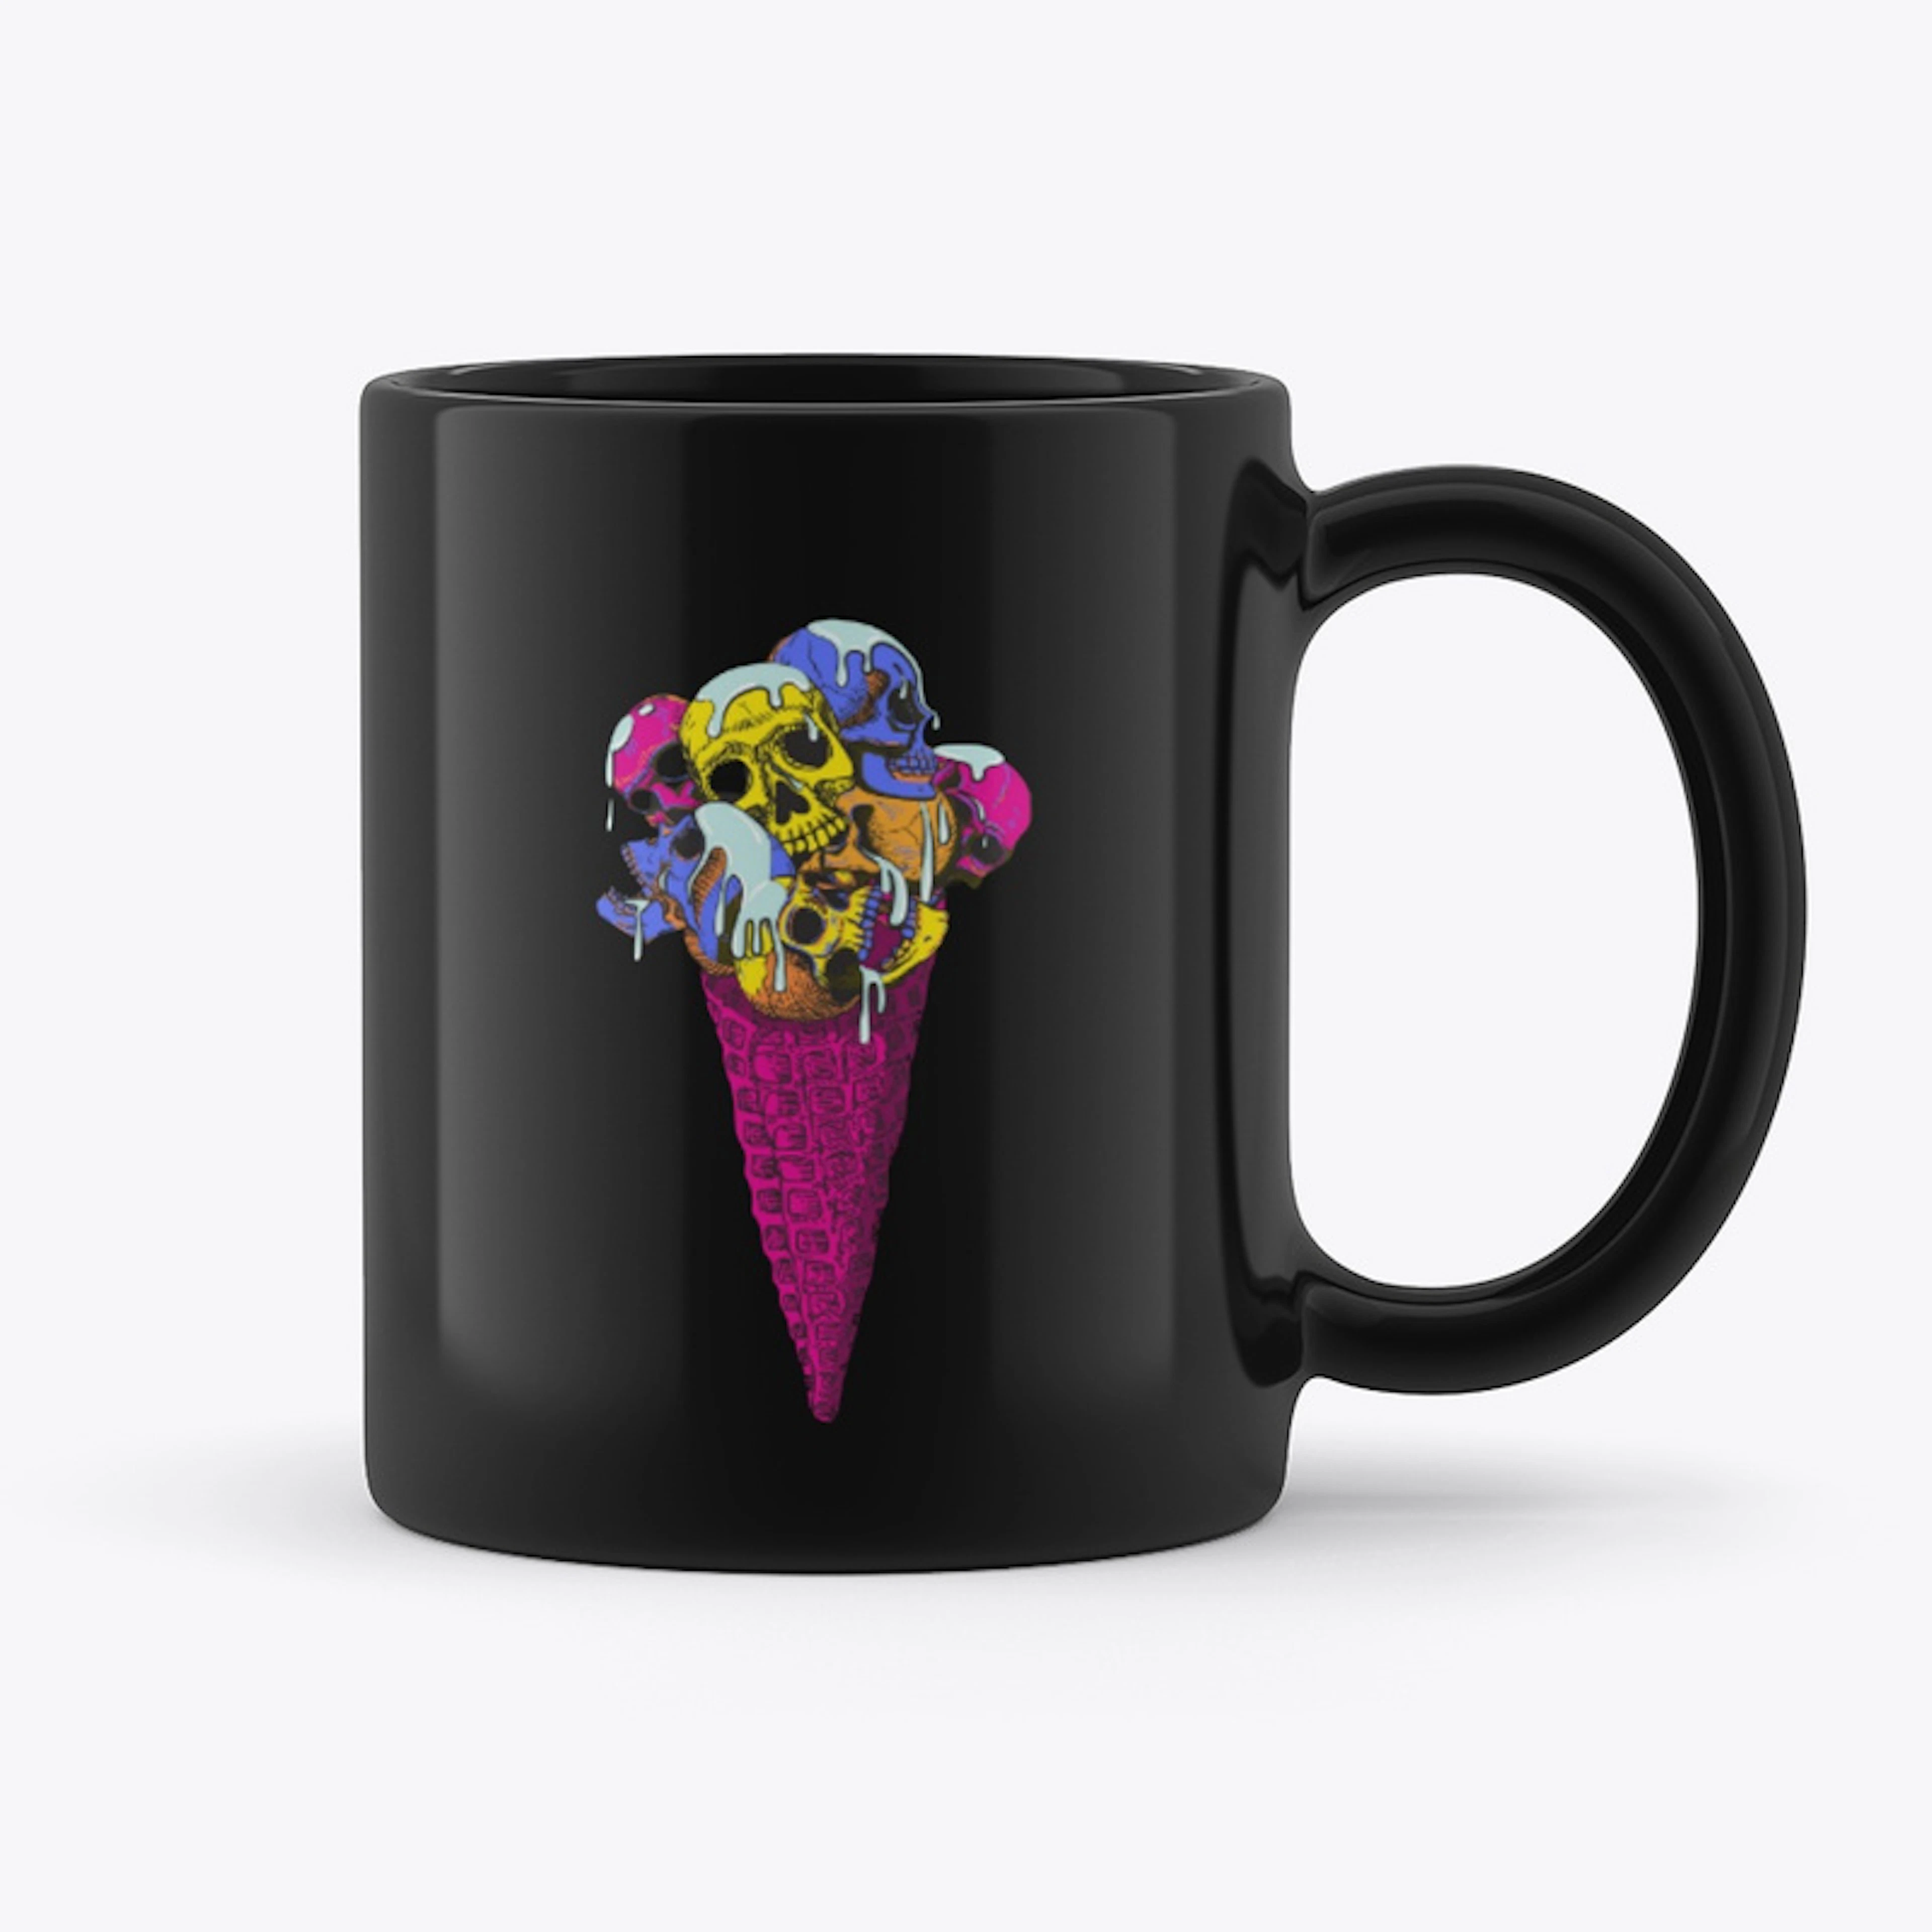 Fatally Delicious Mug, Black